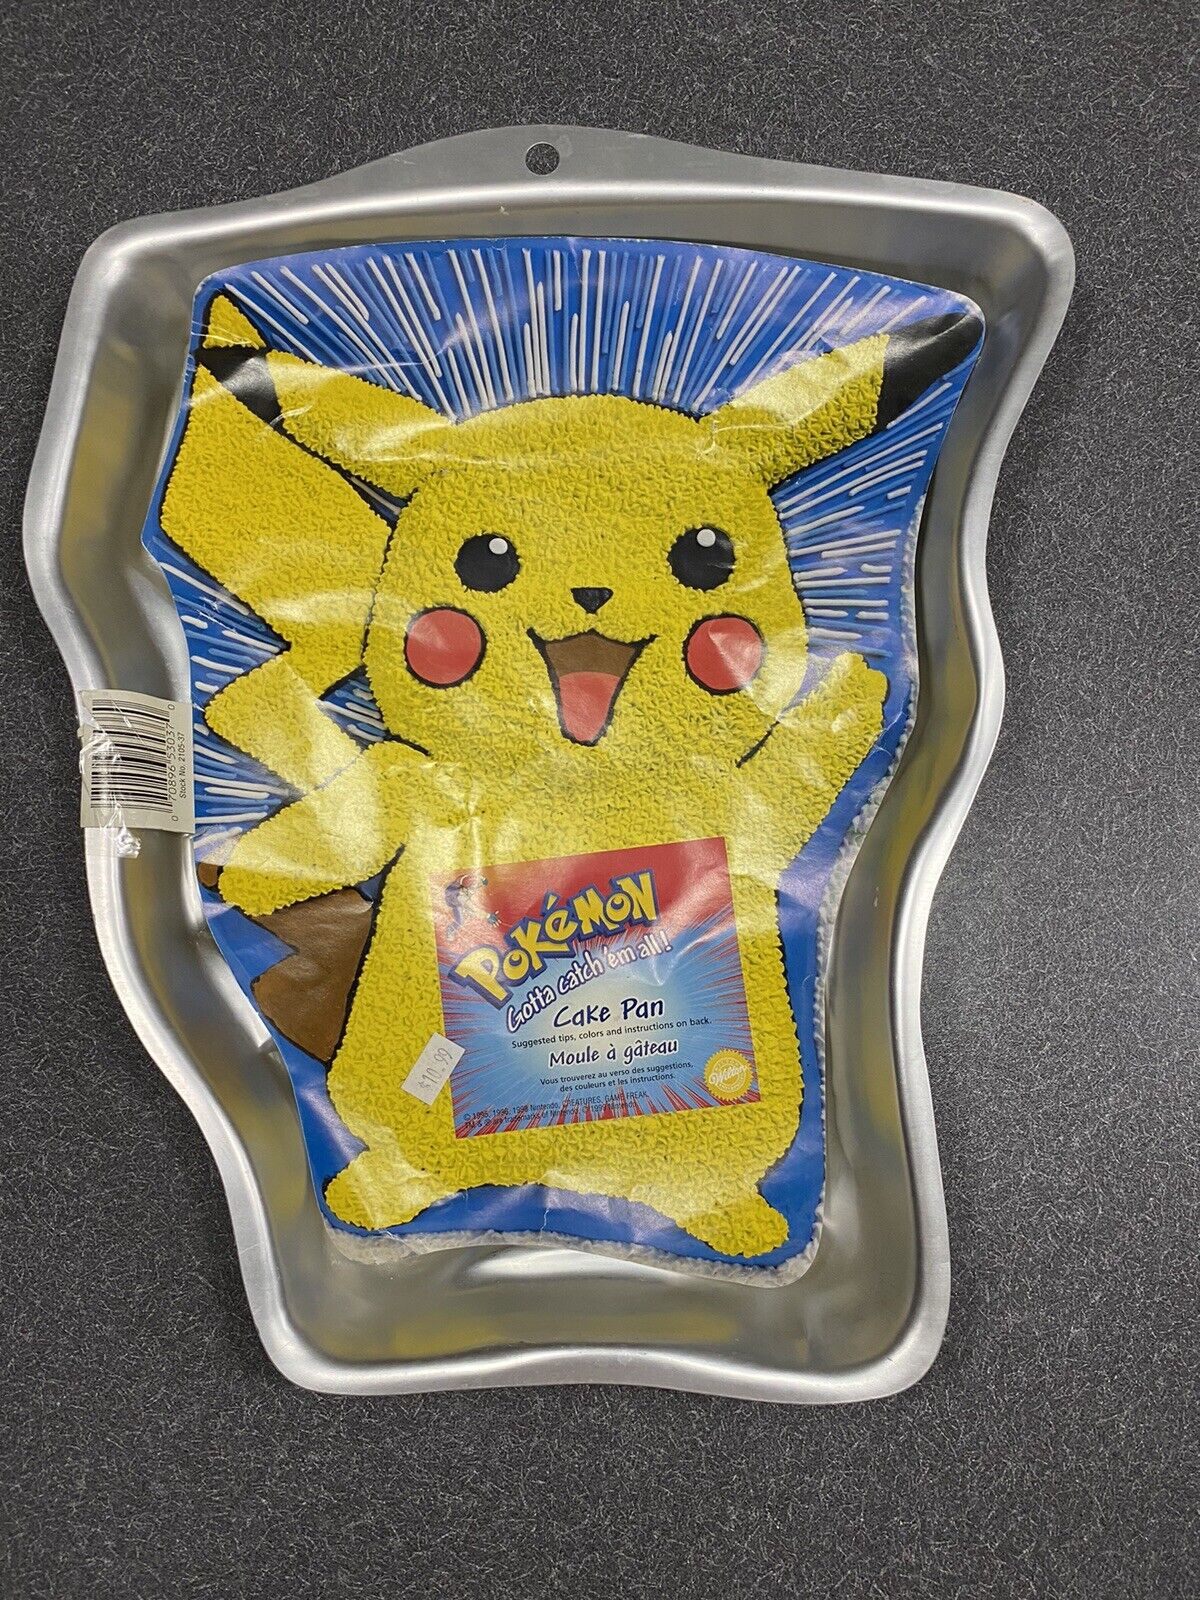 1990s Pikachu Wilton Cake Pan